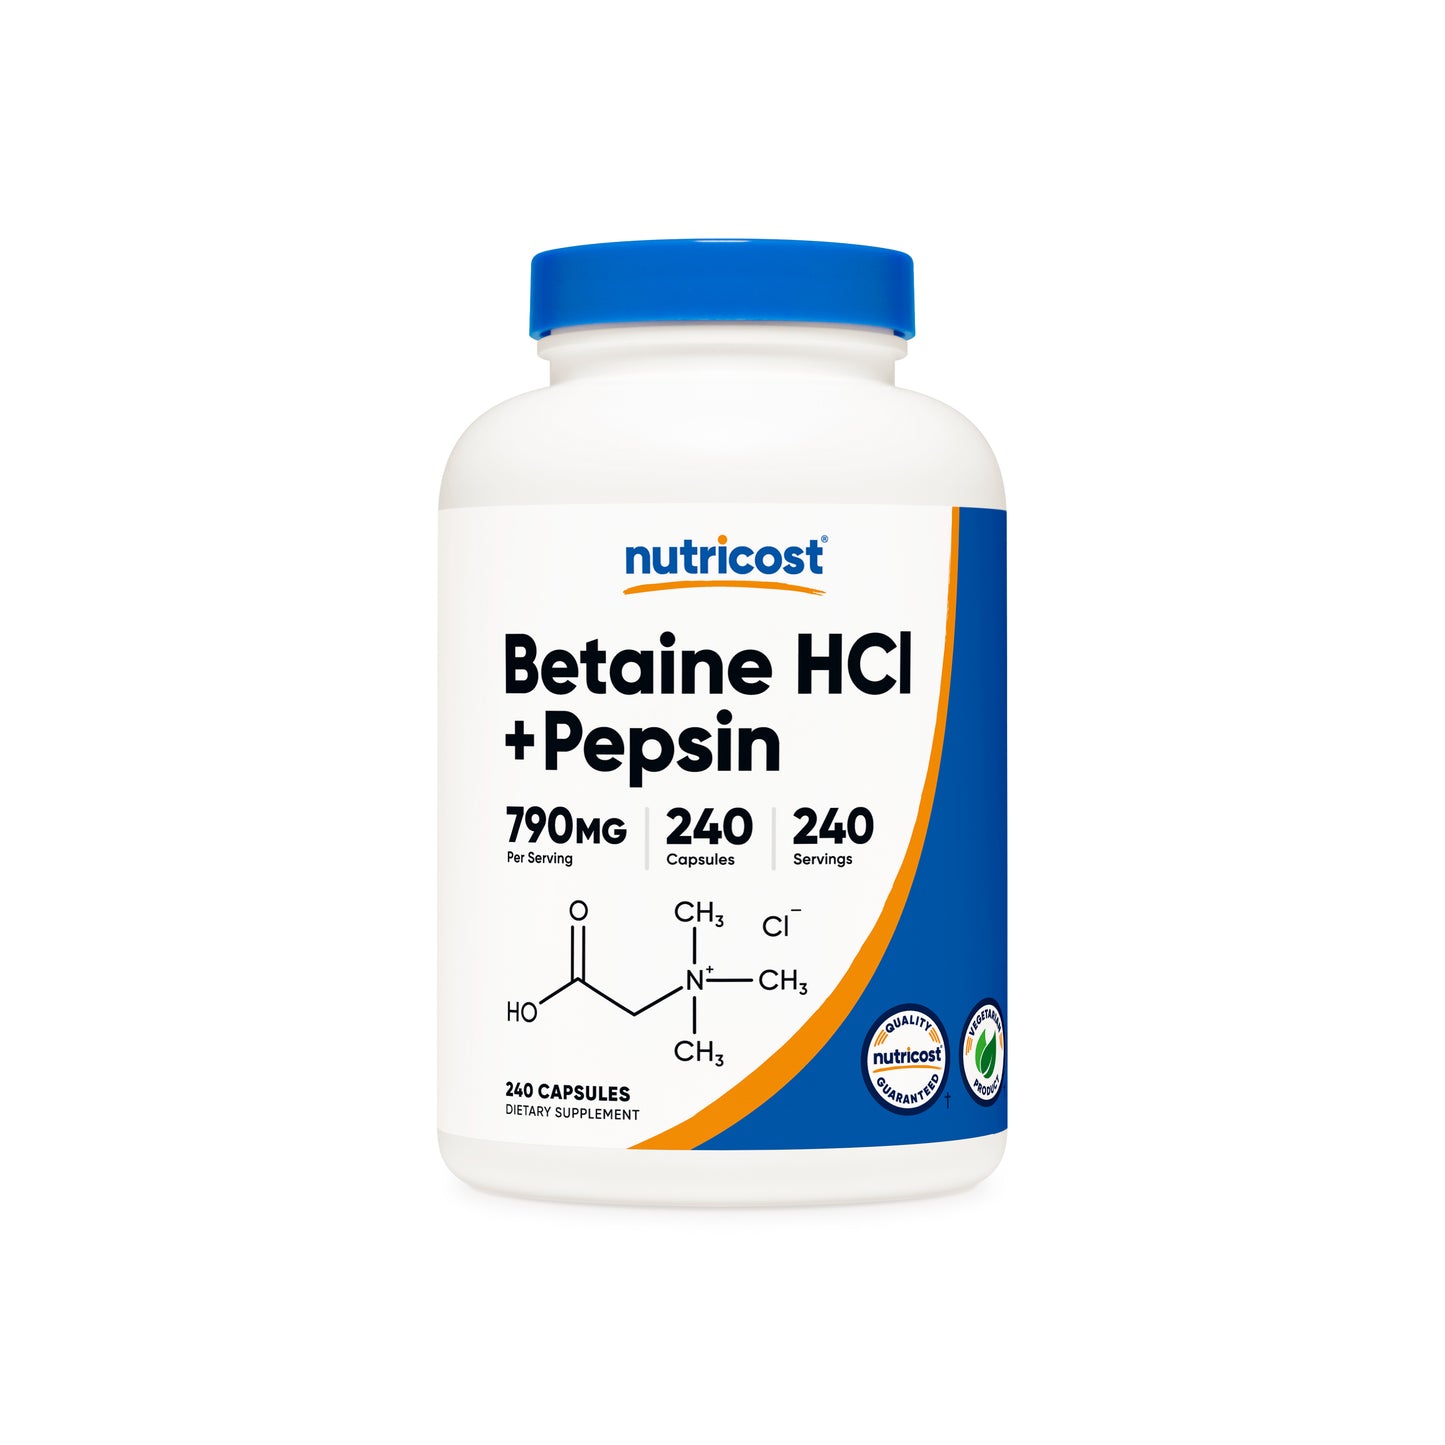 Nutricost Betaine HCI + Pepsin Capsules